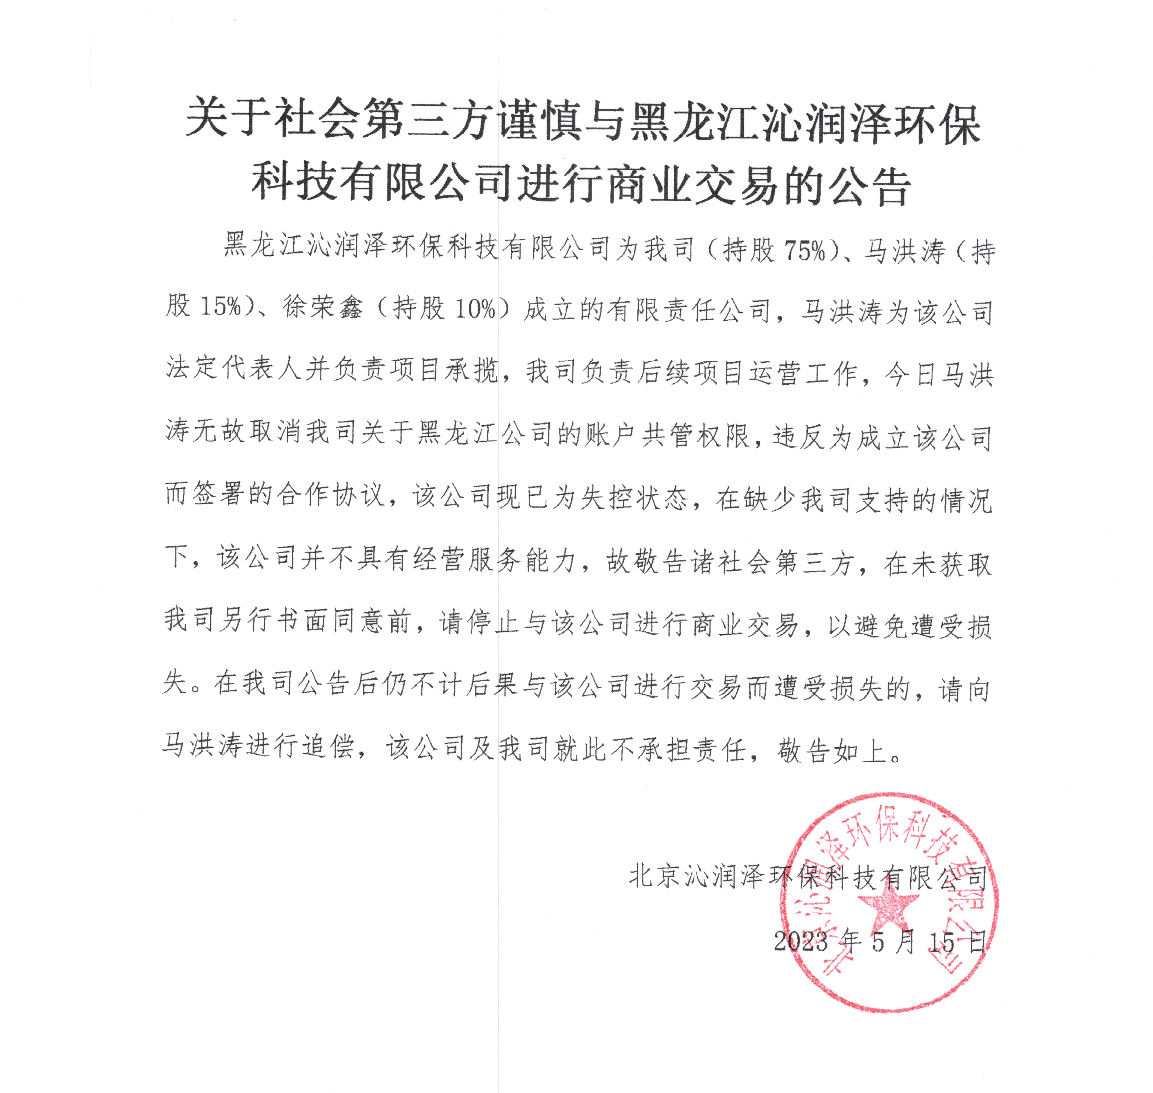 关于社会第三方谨慎与黑龙江沁润泽环保科技有限公司进行商业交易的公告